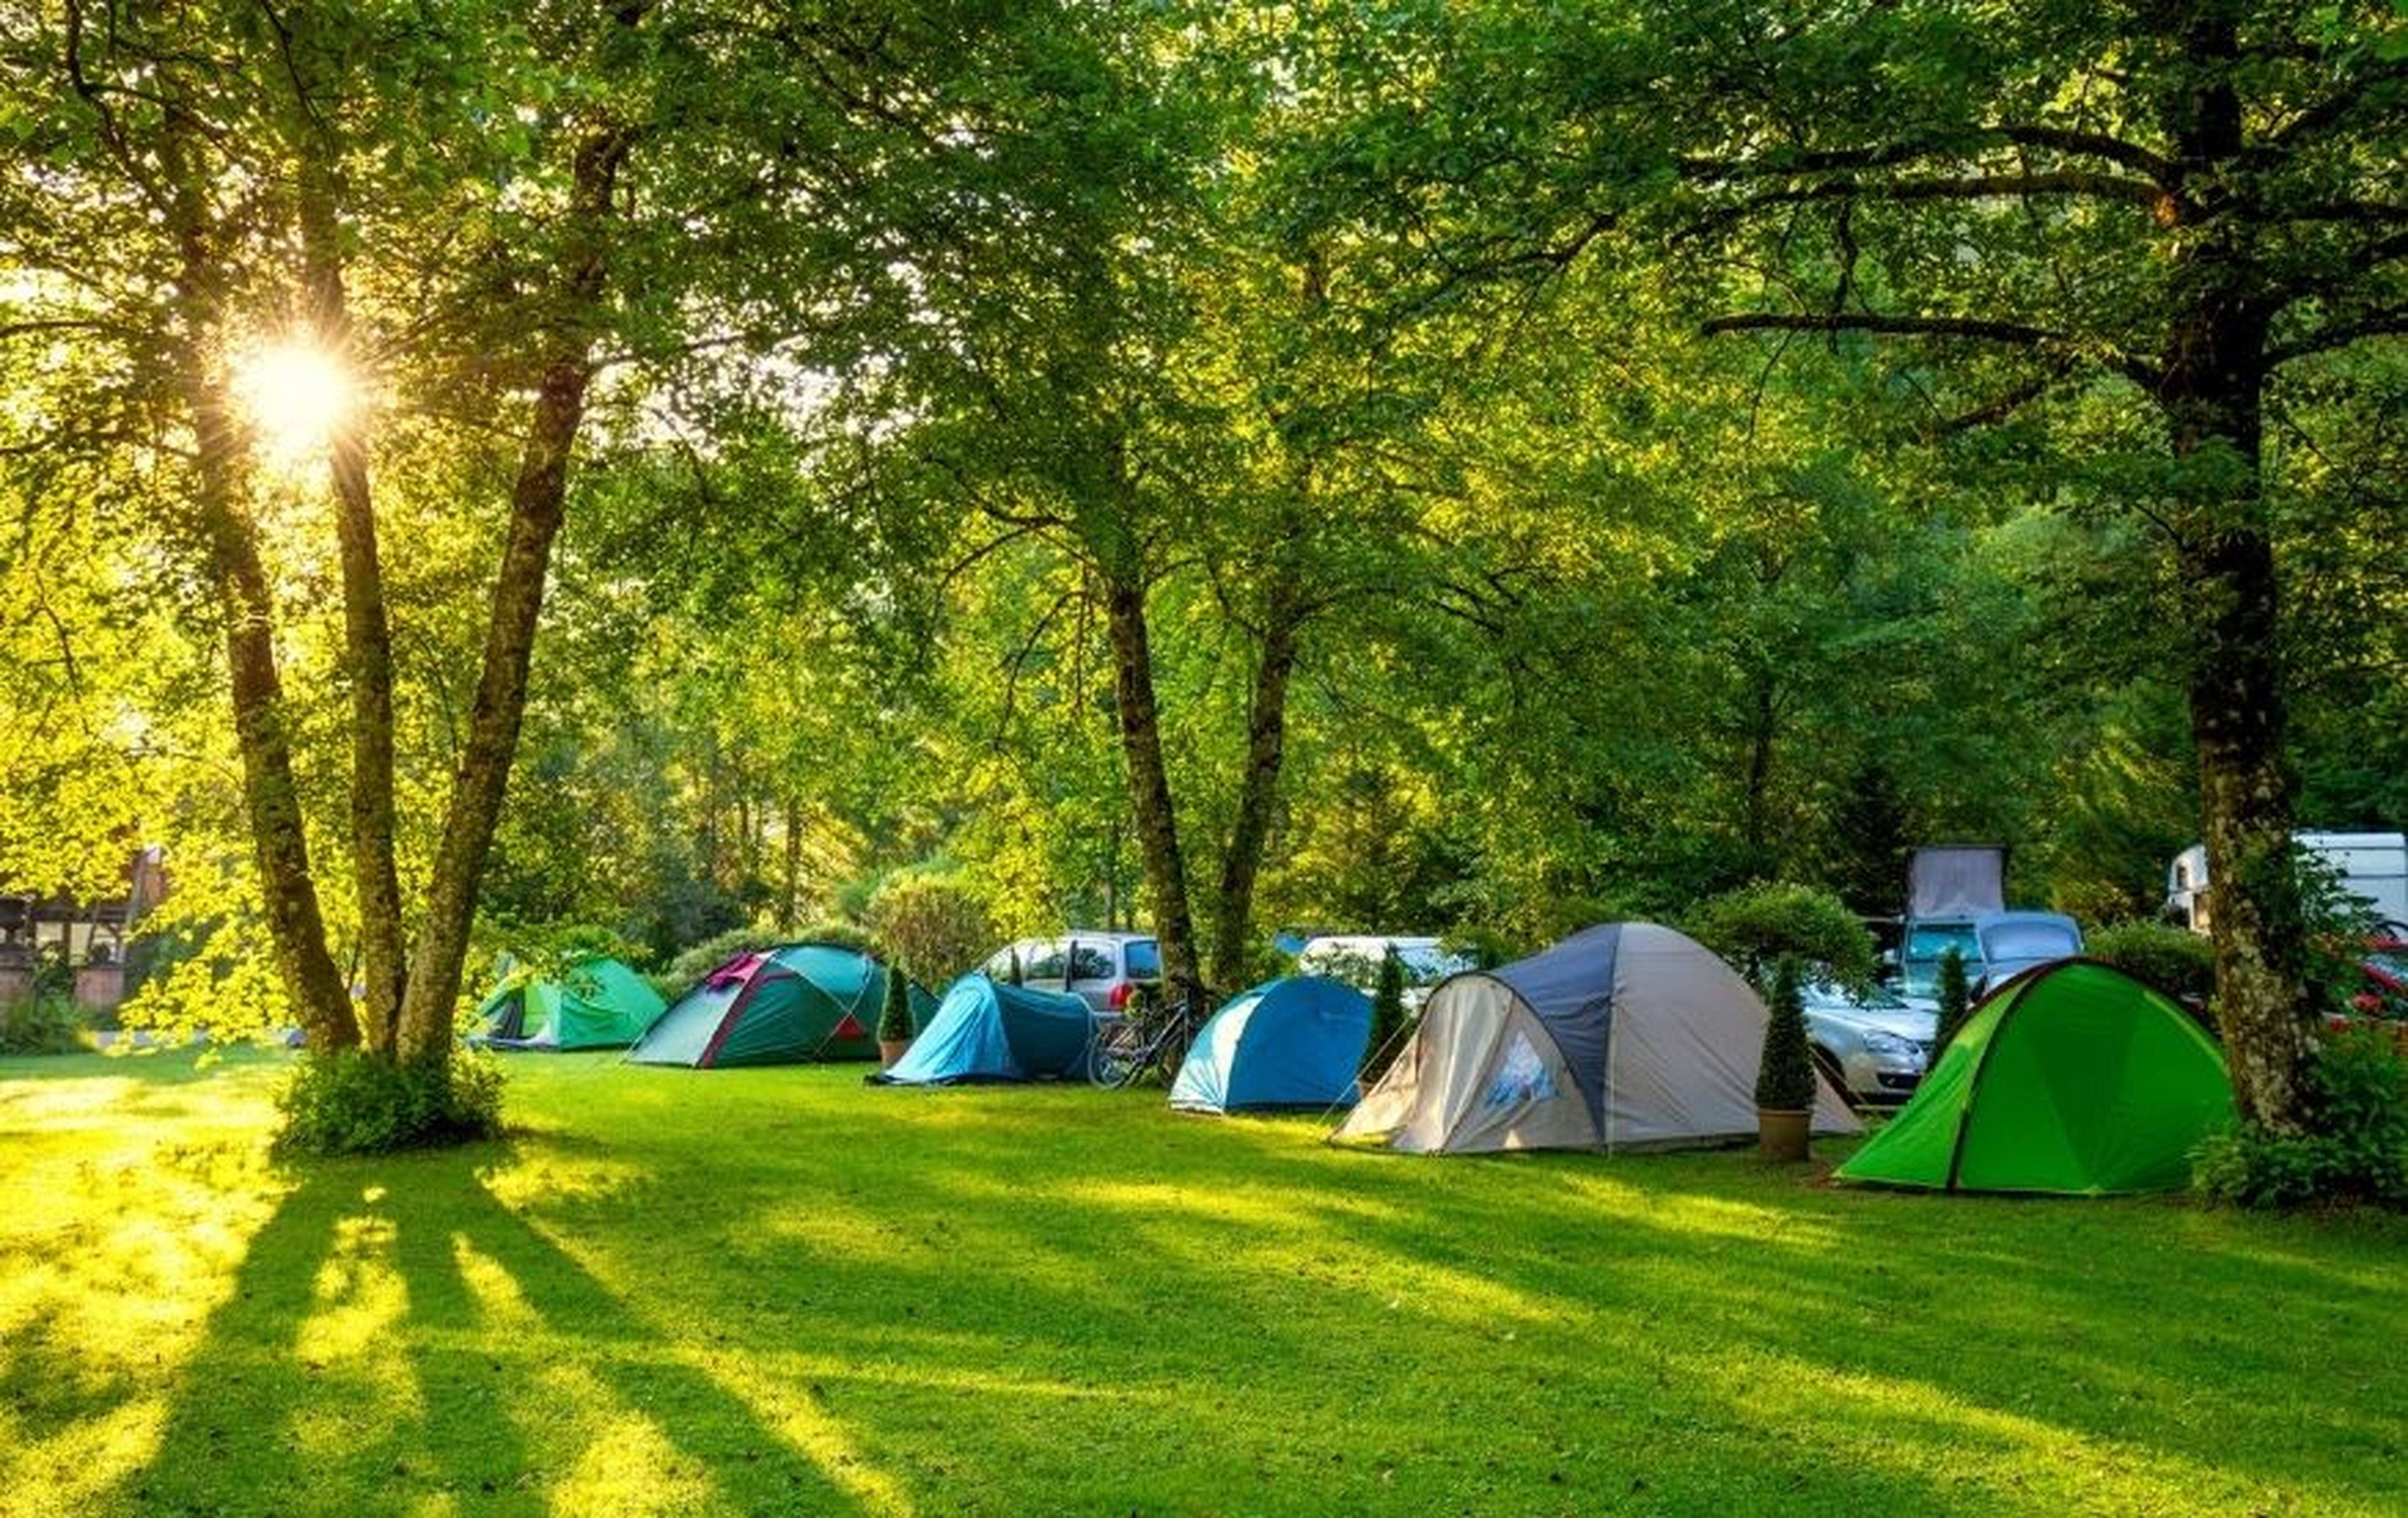 Camping rus. Палатка Camping Tent. Палатка Ronin Camp. Кемпинг Увильды. Привольная Поляна палаточный лагерь.